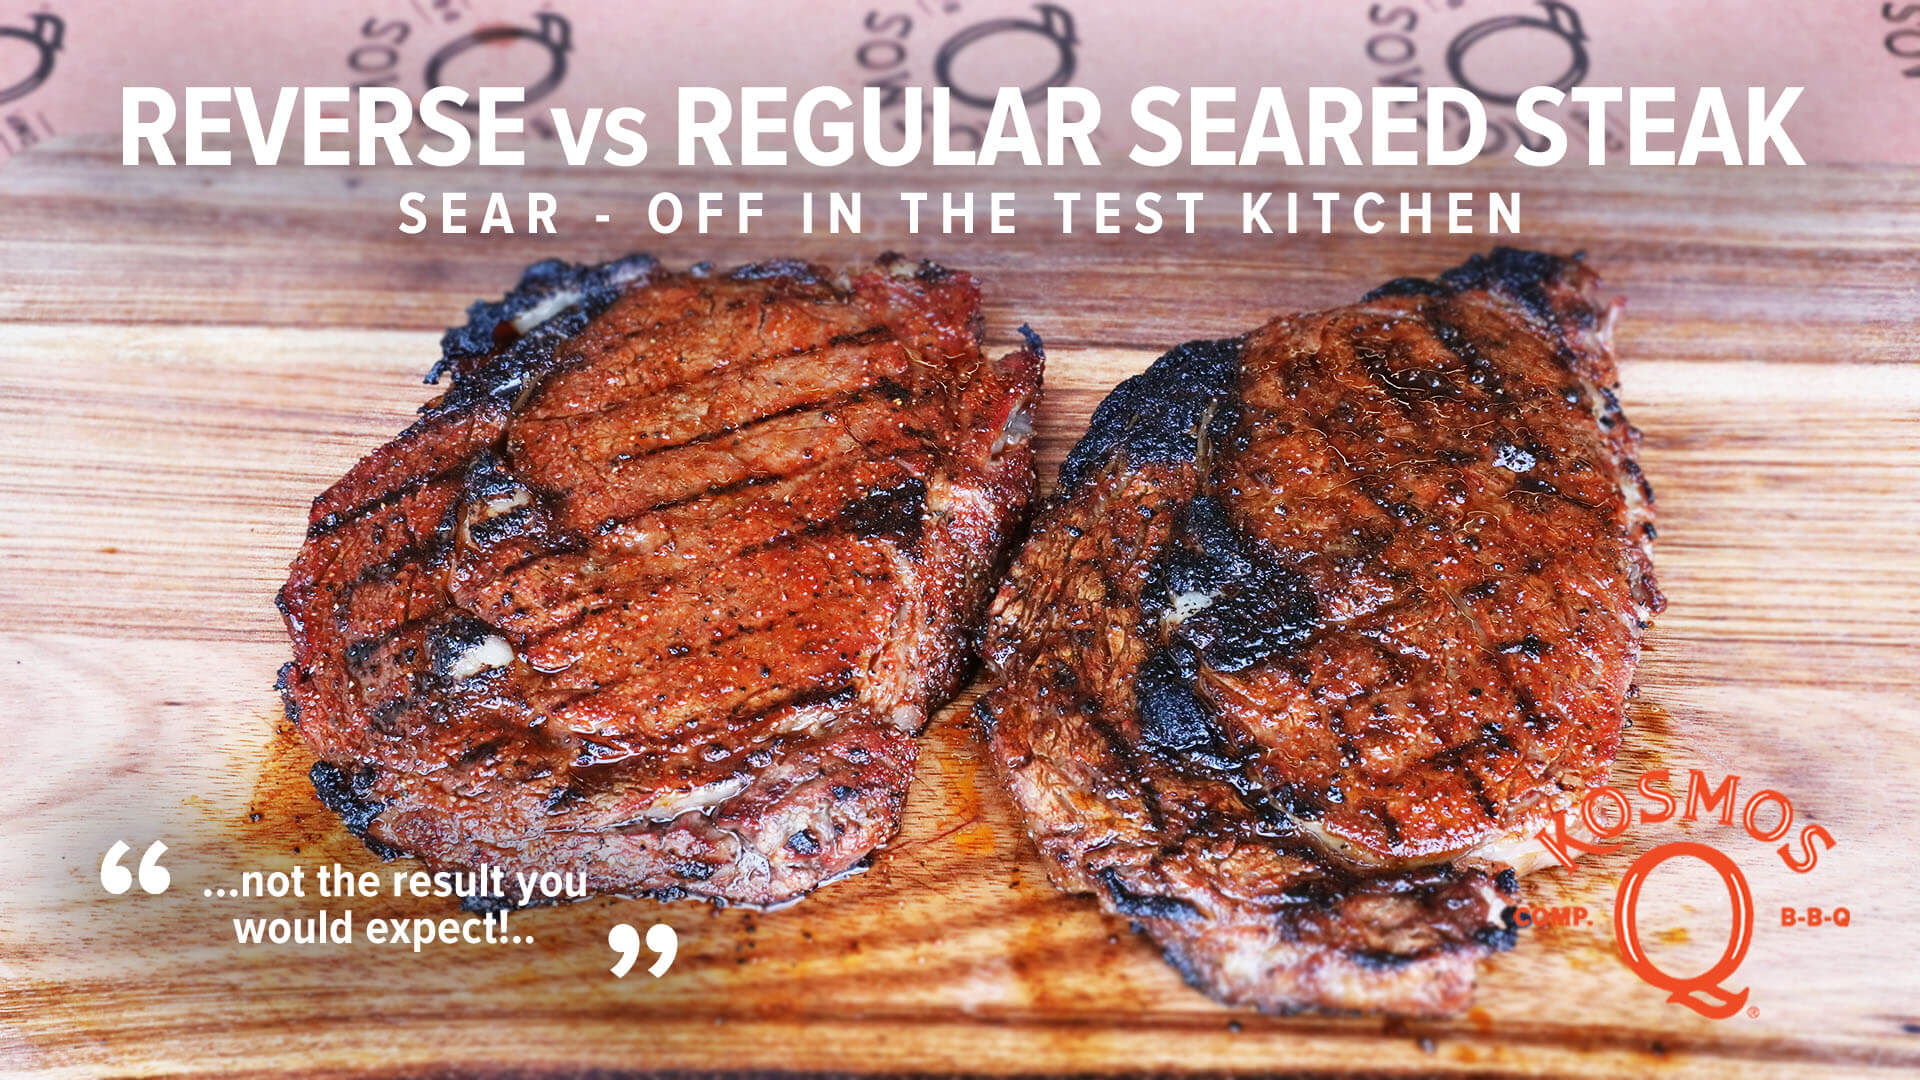 Regular vs. Reverse Seared Steak